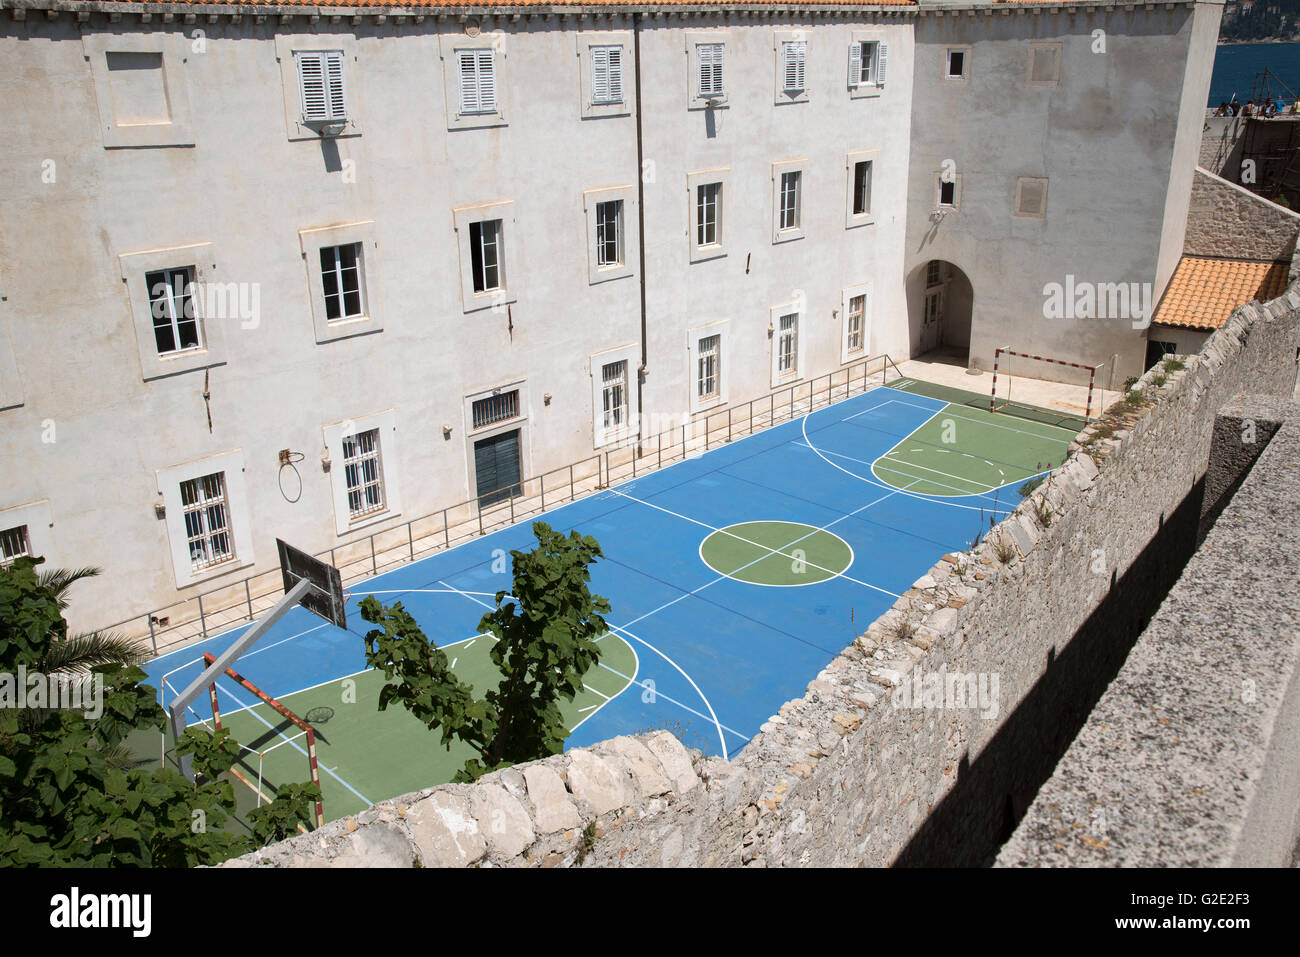 Sport Gericht DUBROVNIK Kroatien Sportplatz einer Schule im Überblick für die Nutzung in verschiedenen Sportarten gekennzeichnet Stockfoto